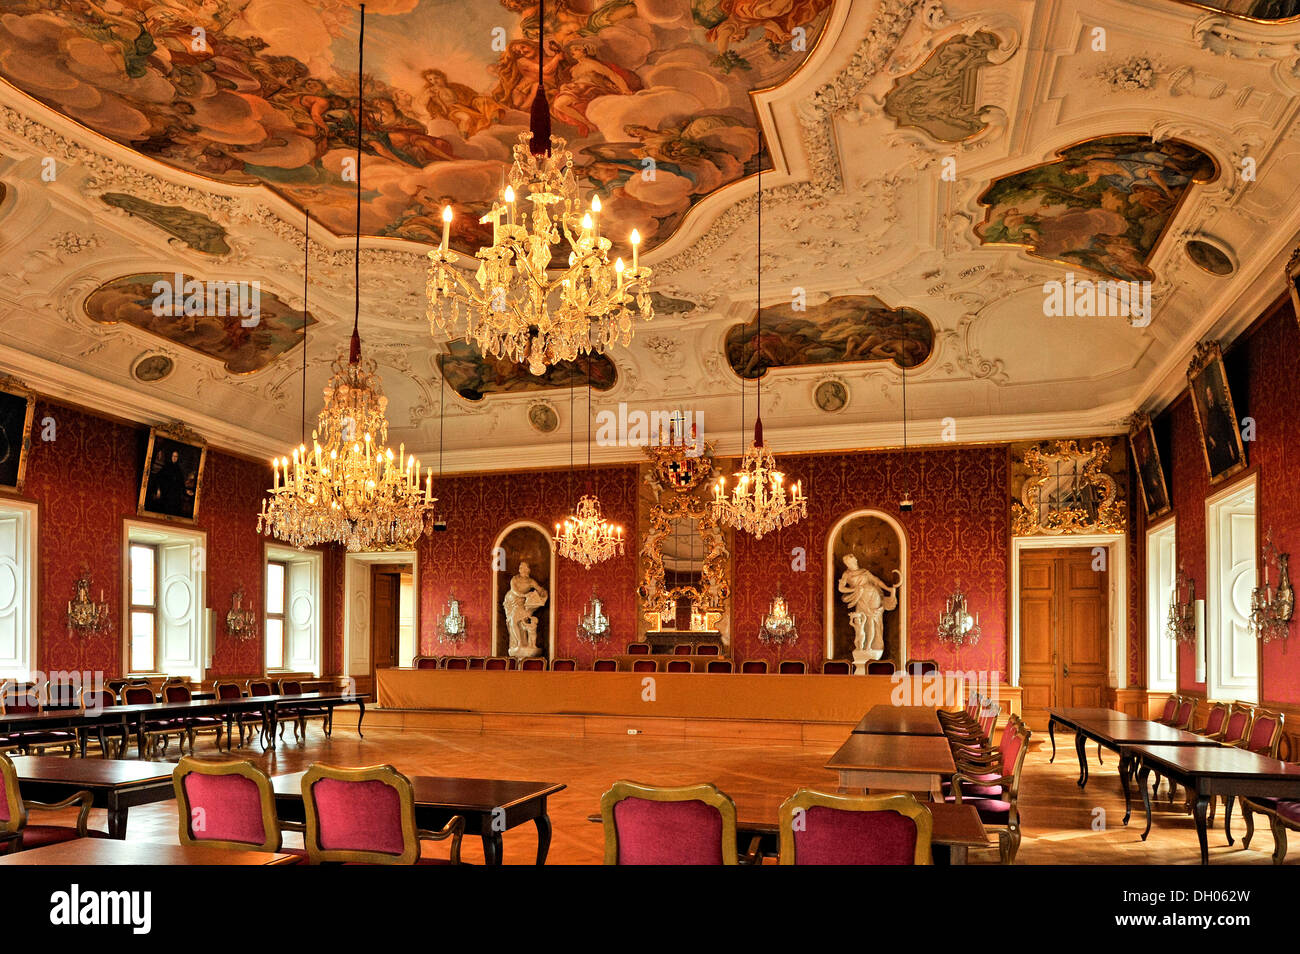 Prince's Hall, Stadtschloss City Palace, Fulda, Hesse, Germany Stock Photo